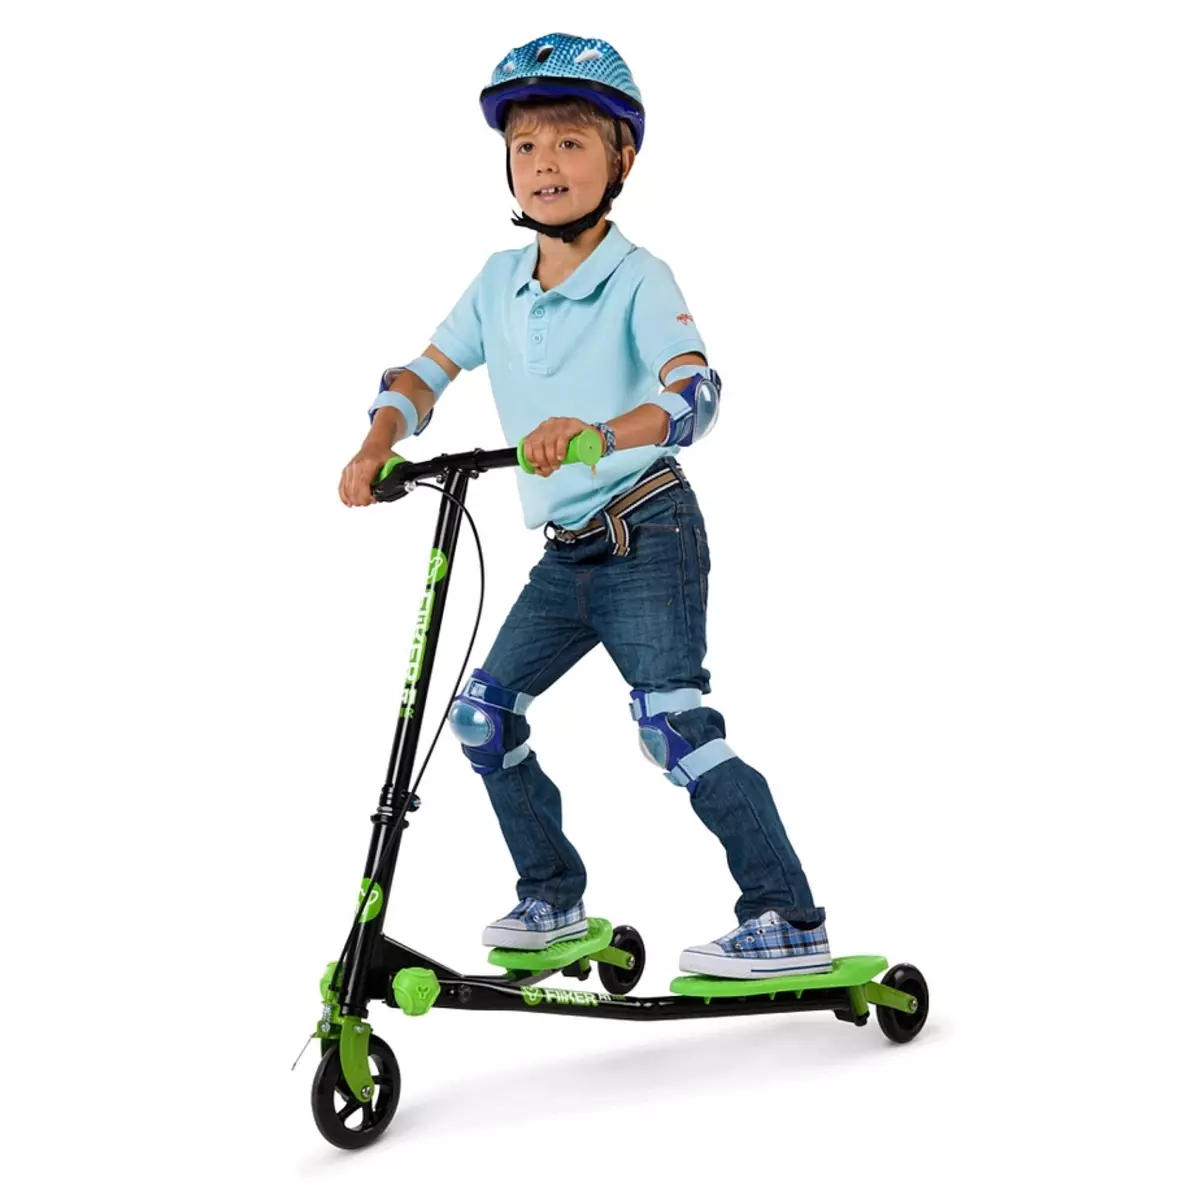 Vaikų motoroleriai (55 nuotraukos): Kaip pasirinkti motorolerį vaikams? Kaip mokyti vaiką važiuoti? Reitingas geriausių modelių su dideliais ratais ir švirkštimo priemonėmis tėvams. Kaip jūs galite važiuoti? 8730_21